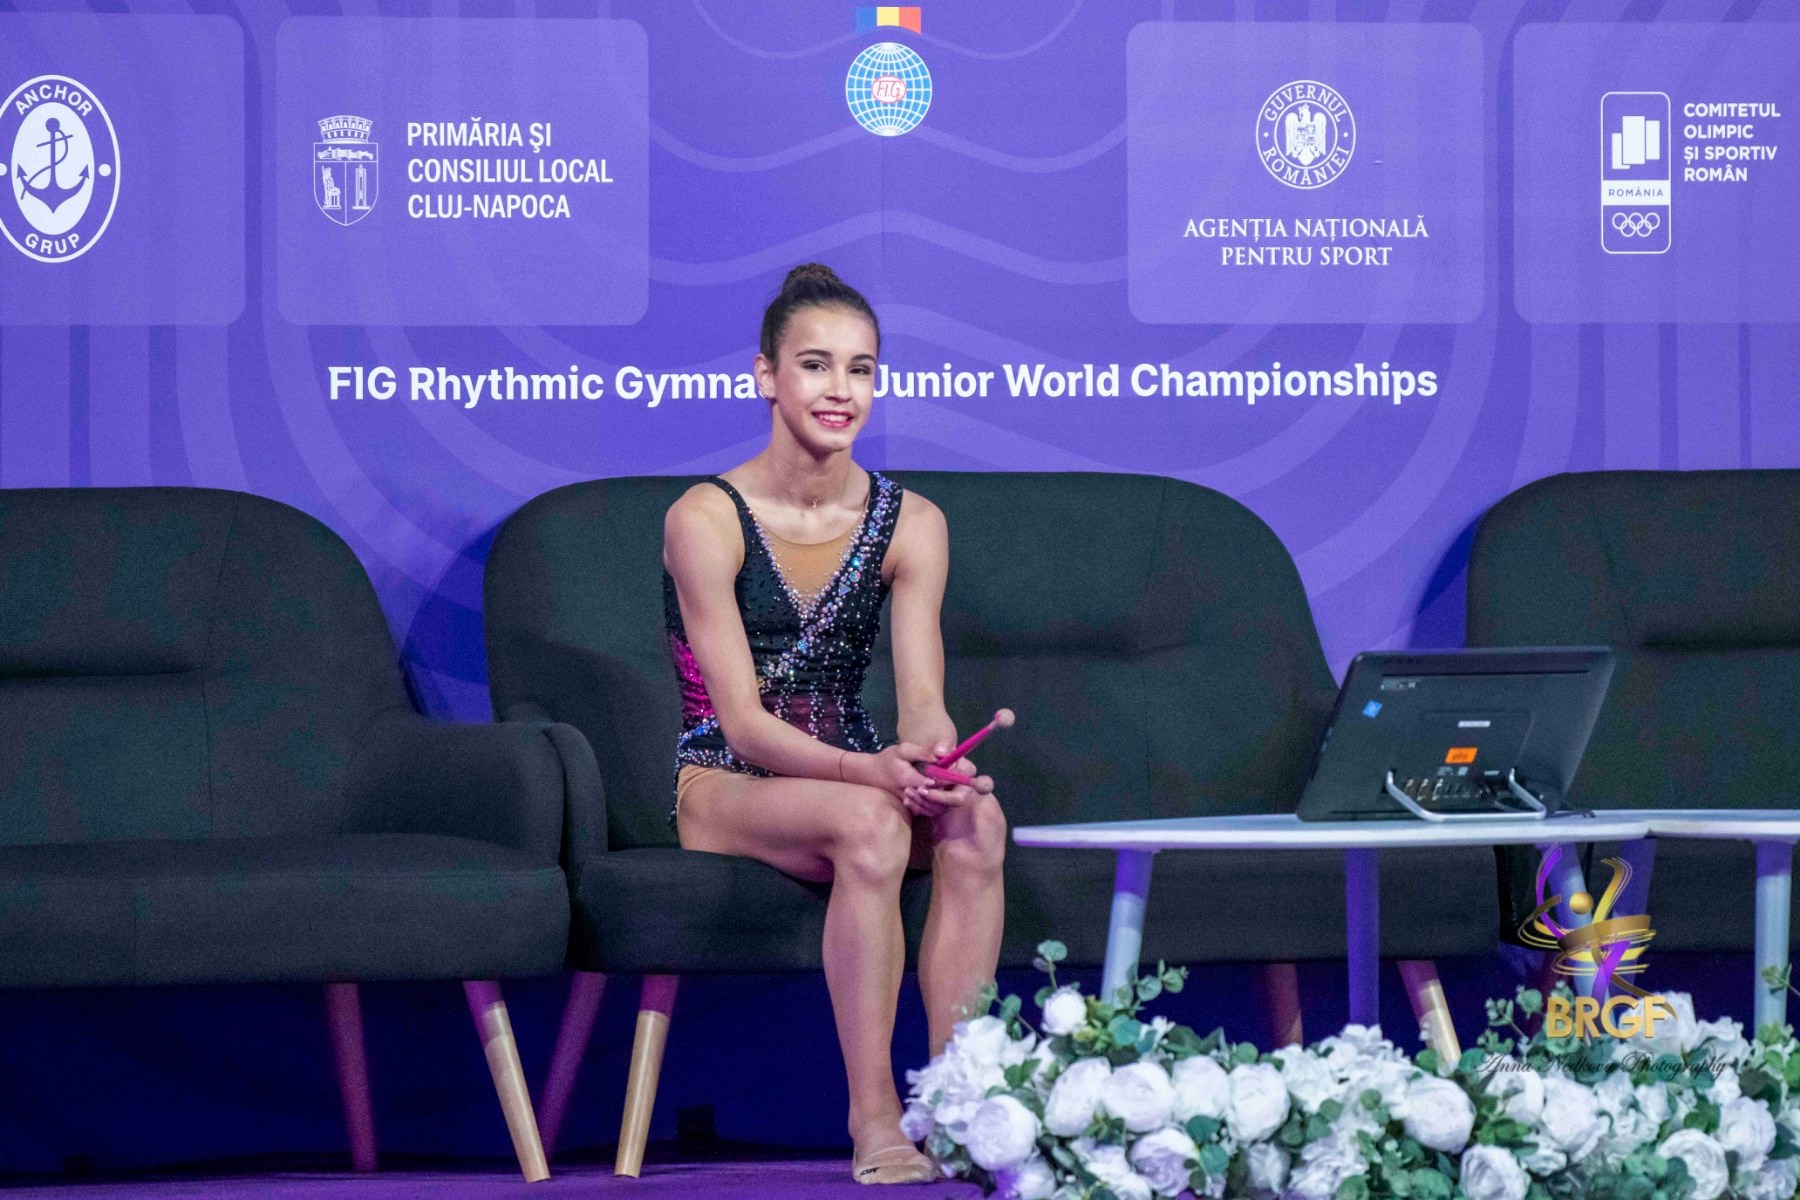 ШАМПИОН! "Златен" старт! Пет медала за Елвира Краснобаева на "Premium Cup"! 🥇🇧🇬